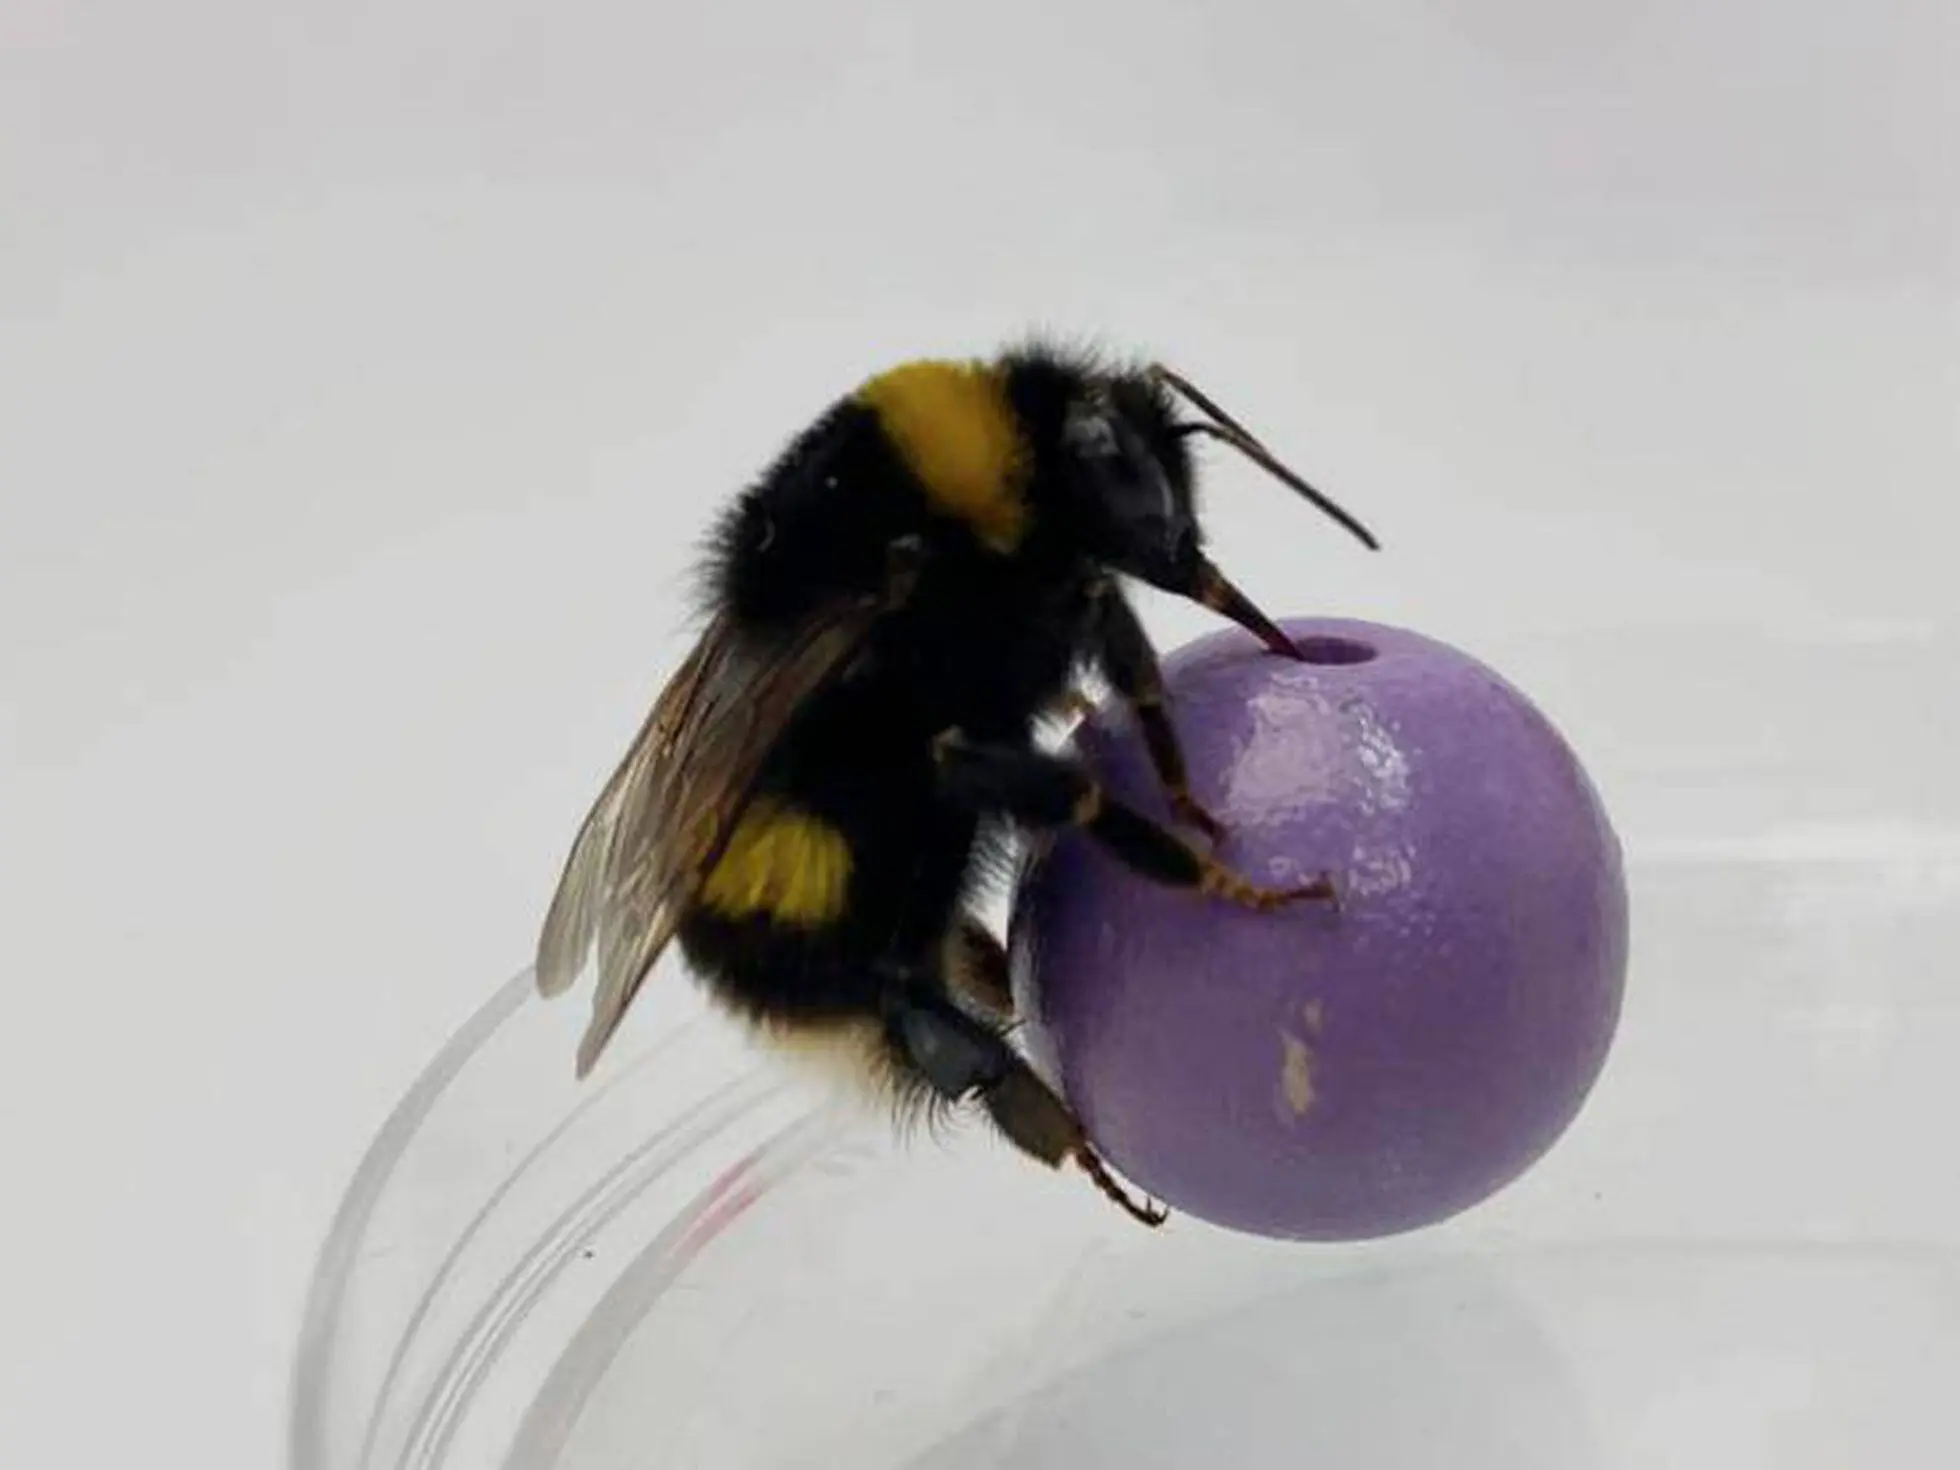 inteligencia de las abejas - Qué detectan las abejas